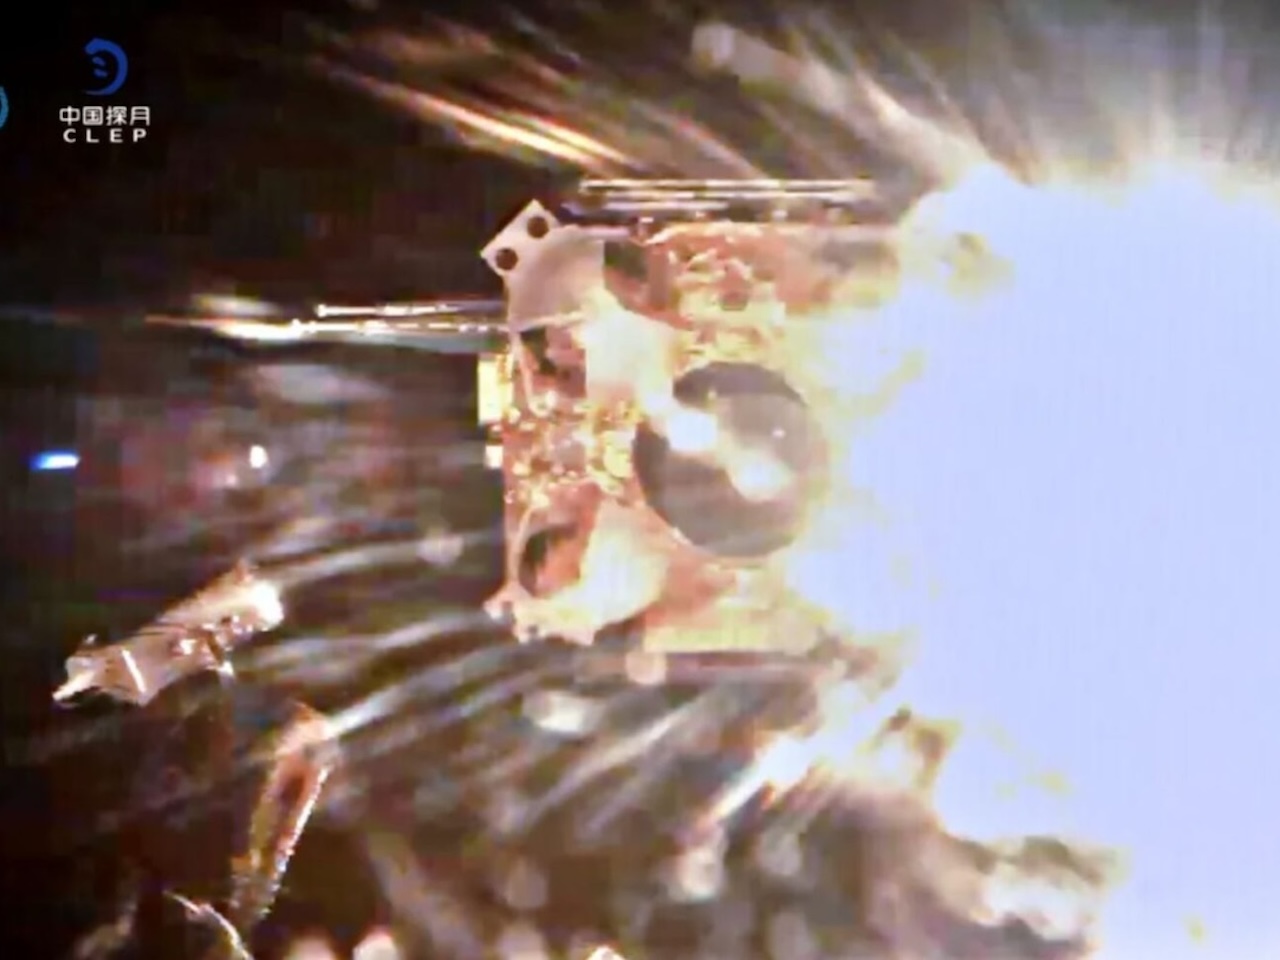 月裏からのサンプルリターンは史上初--中国探査機「嫦娥6号」、組み立てに